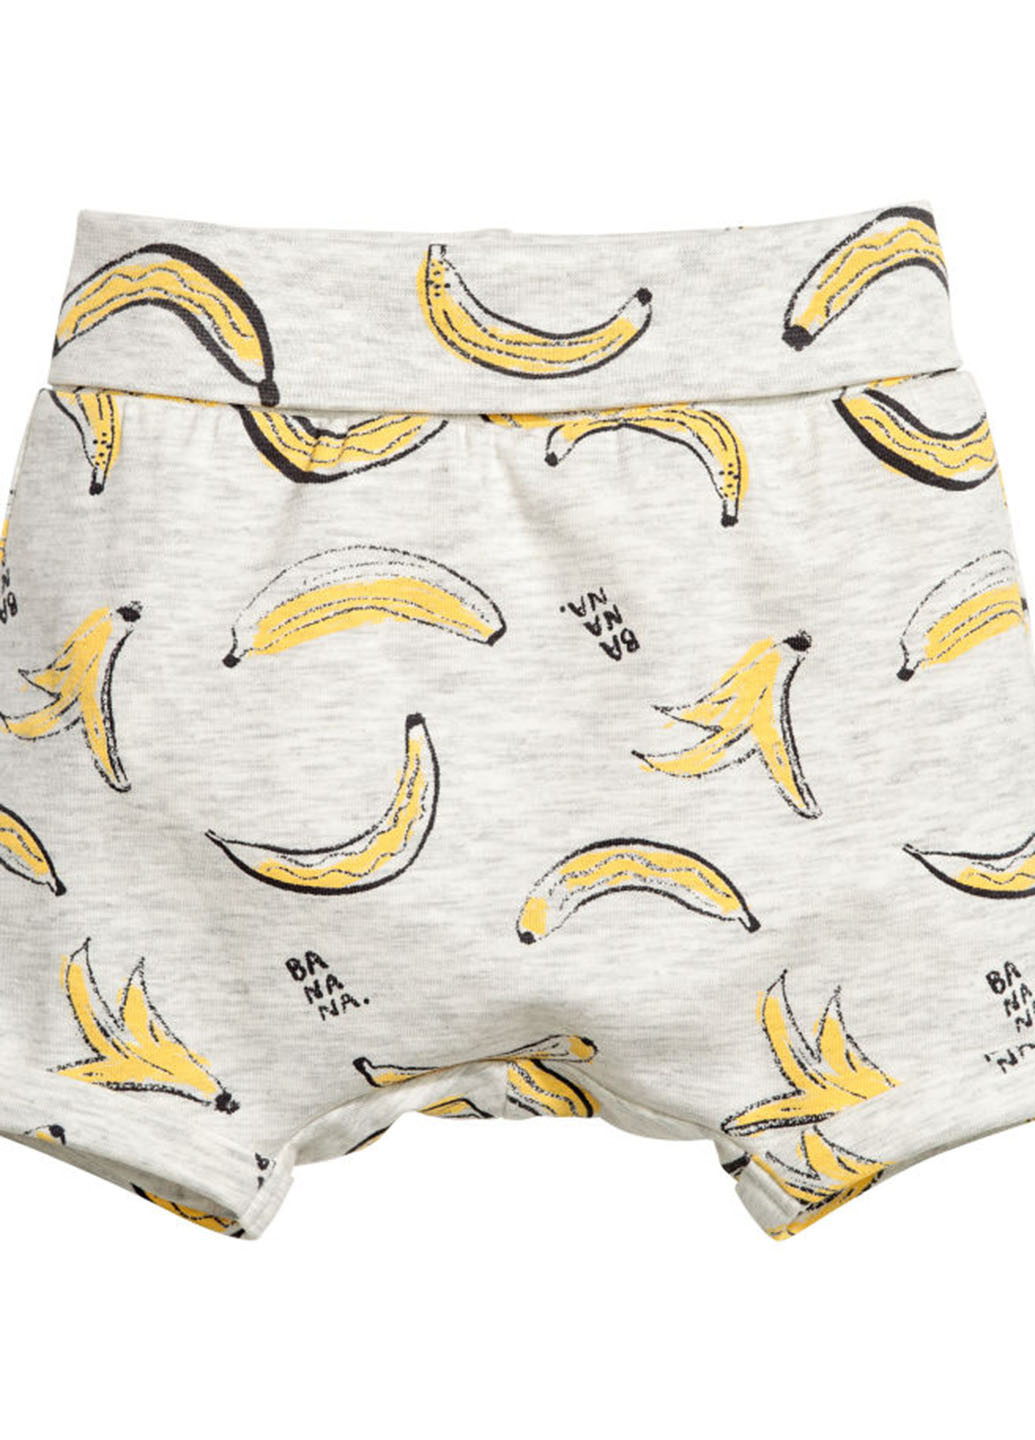 Шорты H&M бананы серо-бежевые домашние хлопок